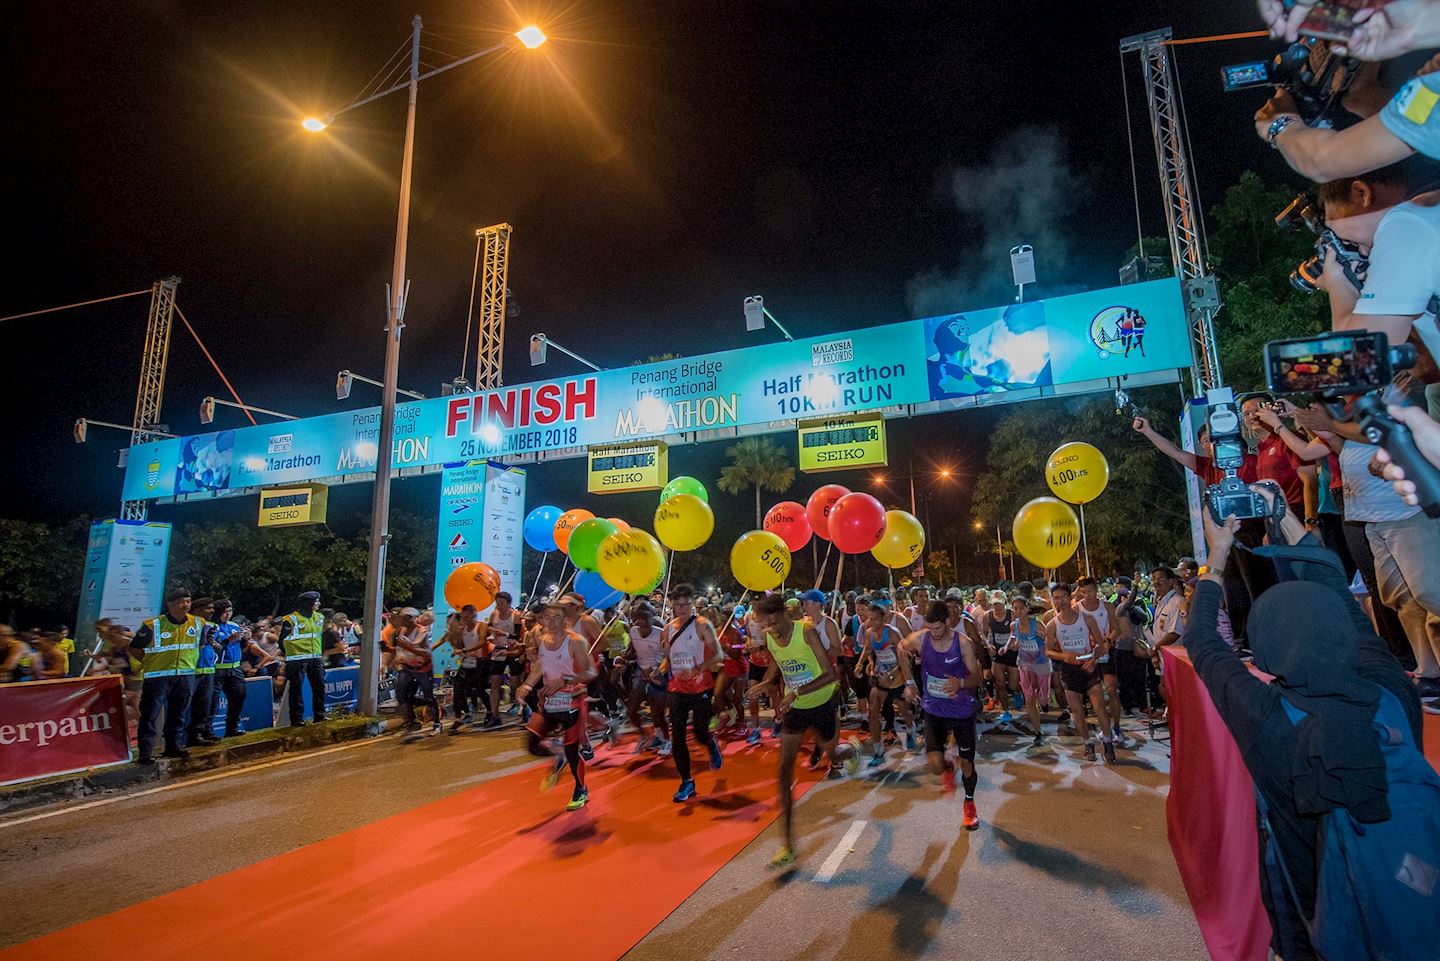 penang bridge international marathon